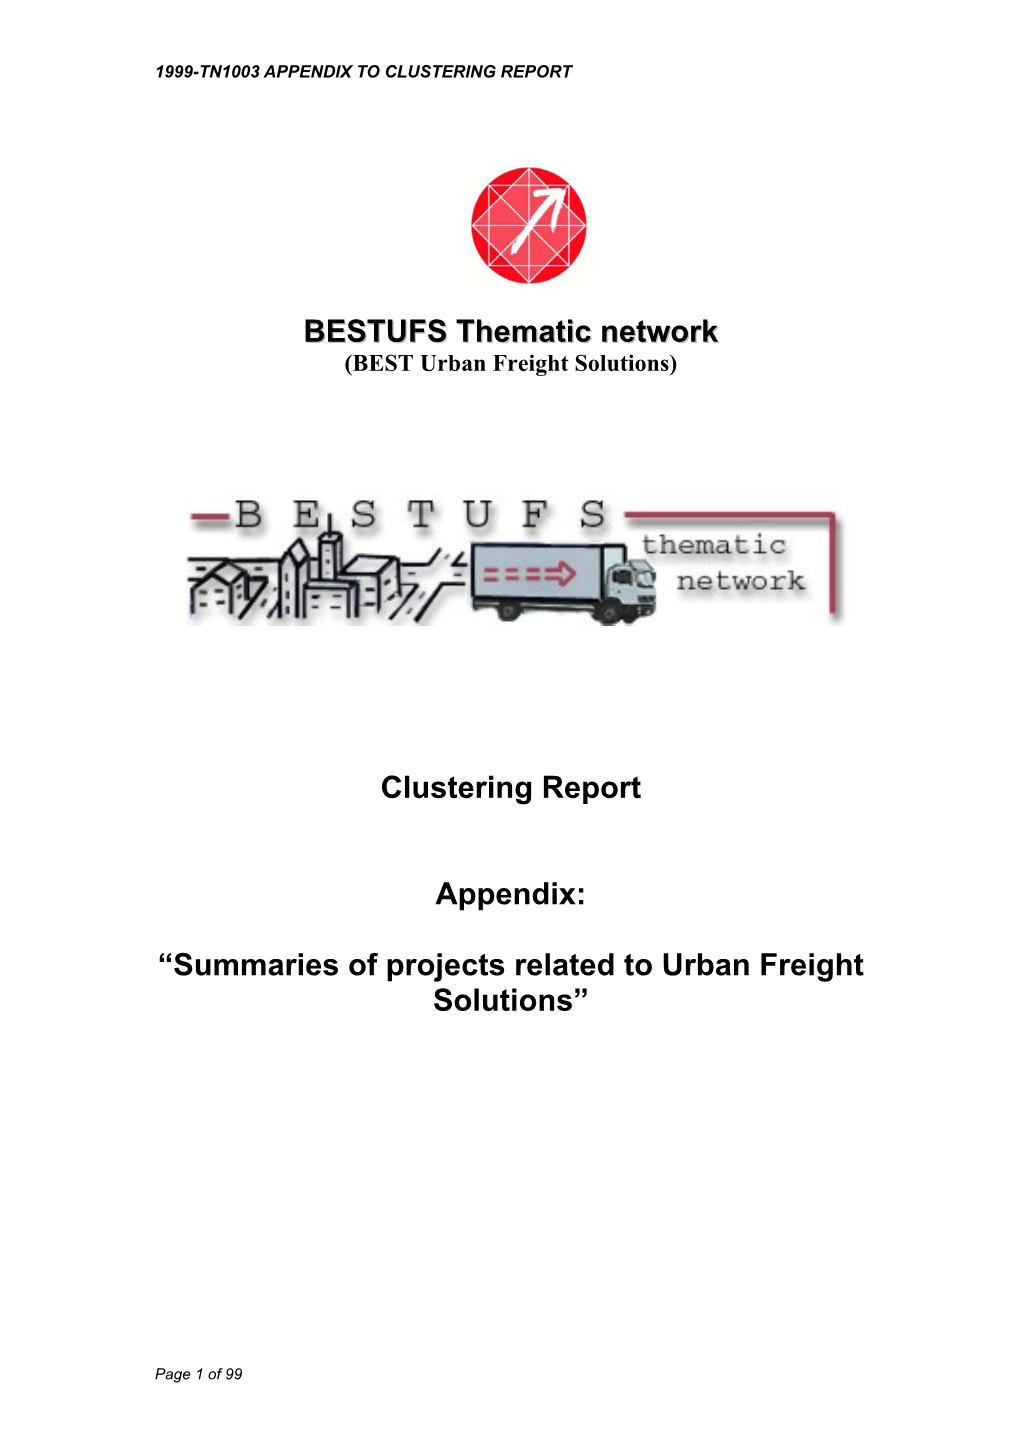 BESTUFS Thematic Network Clustering Report Appendix